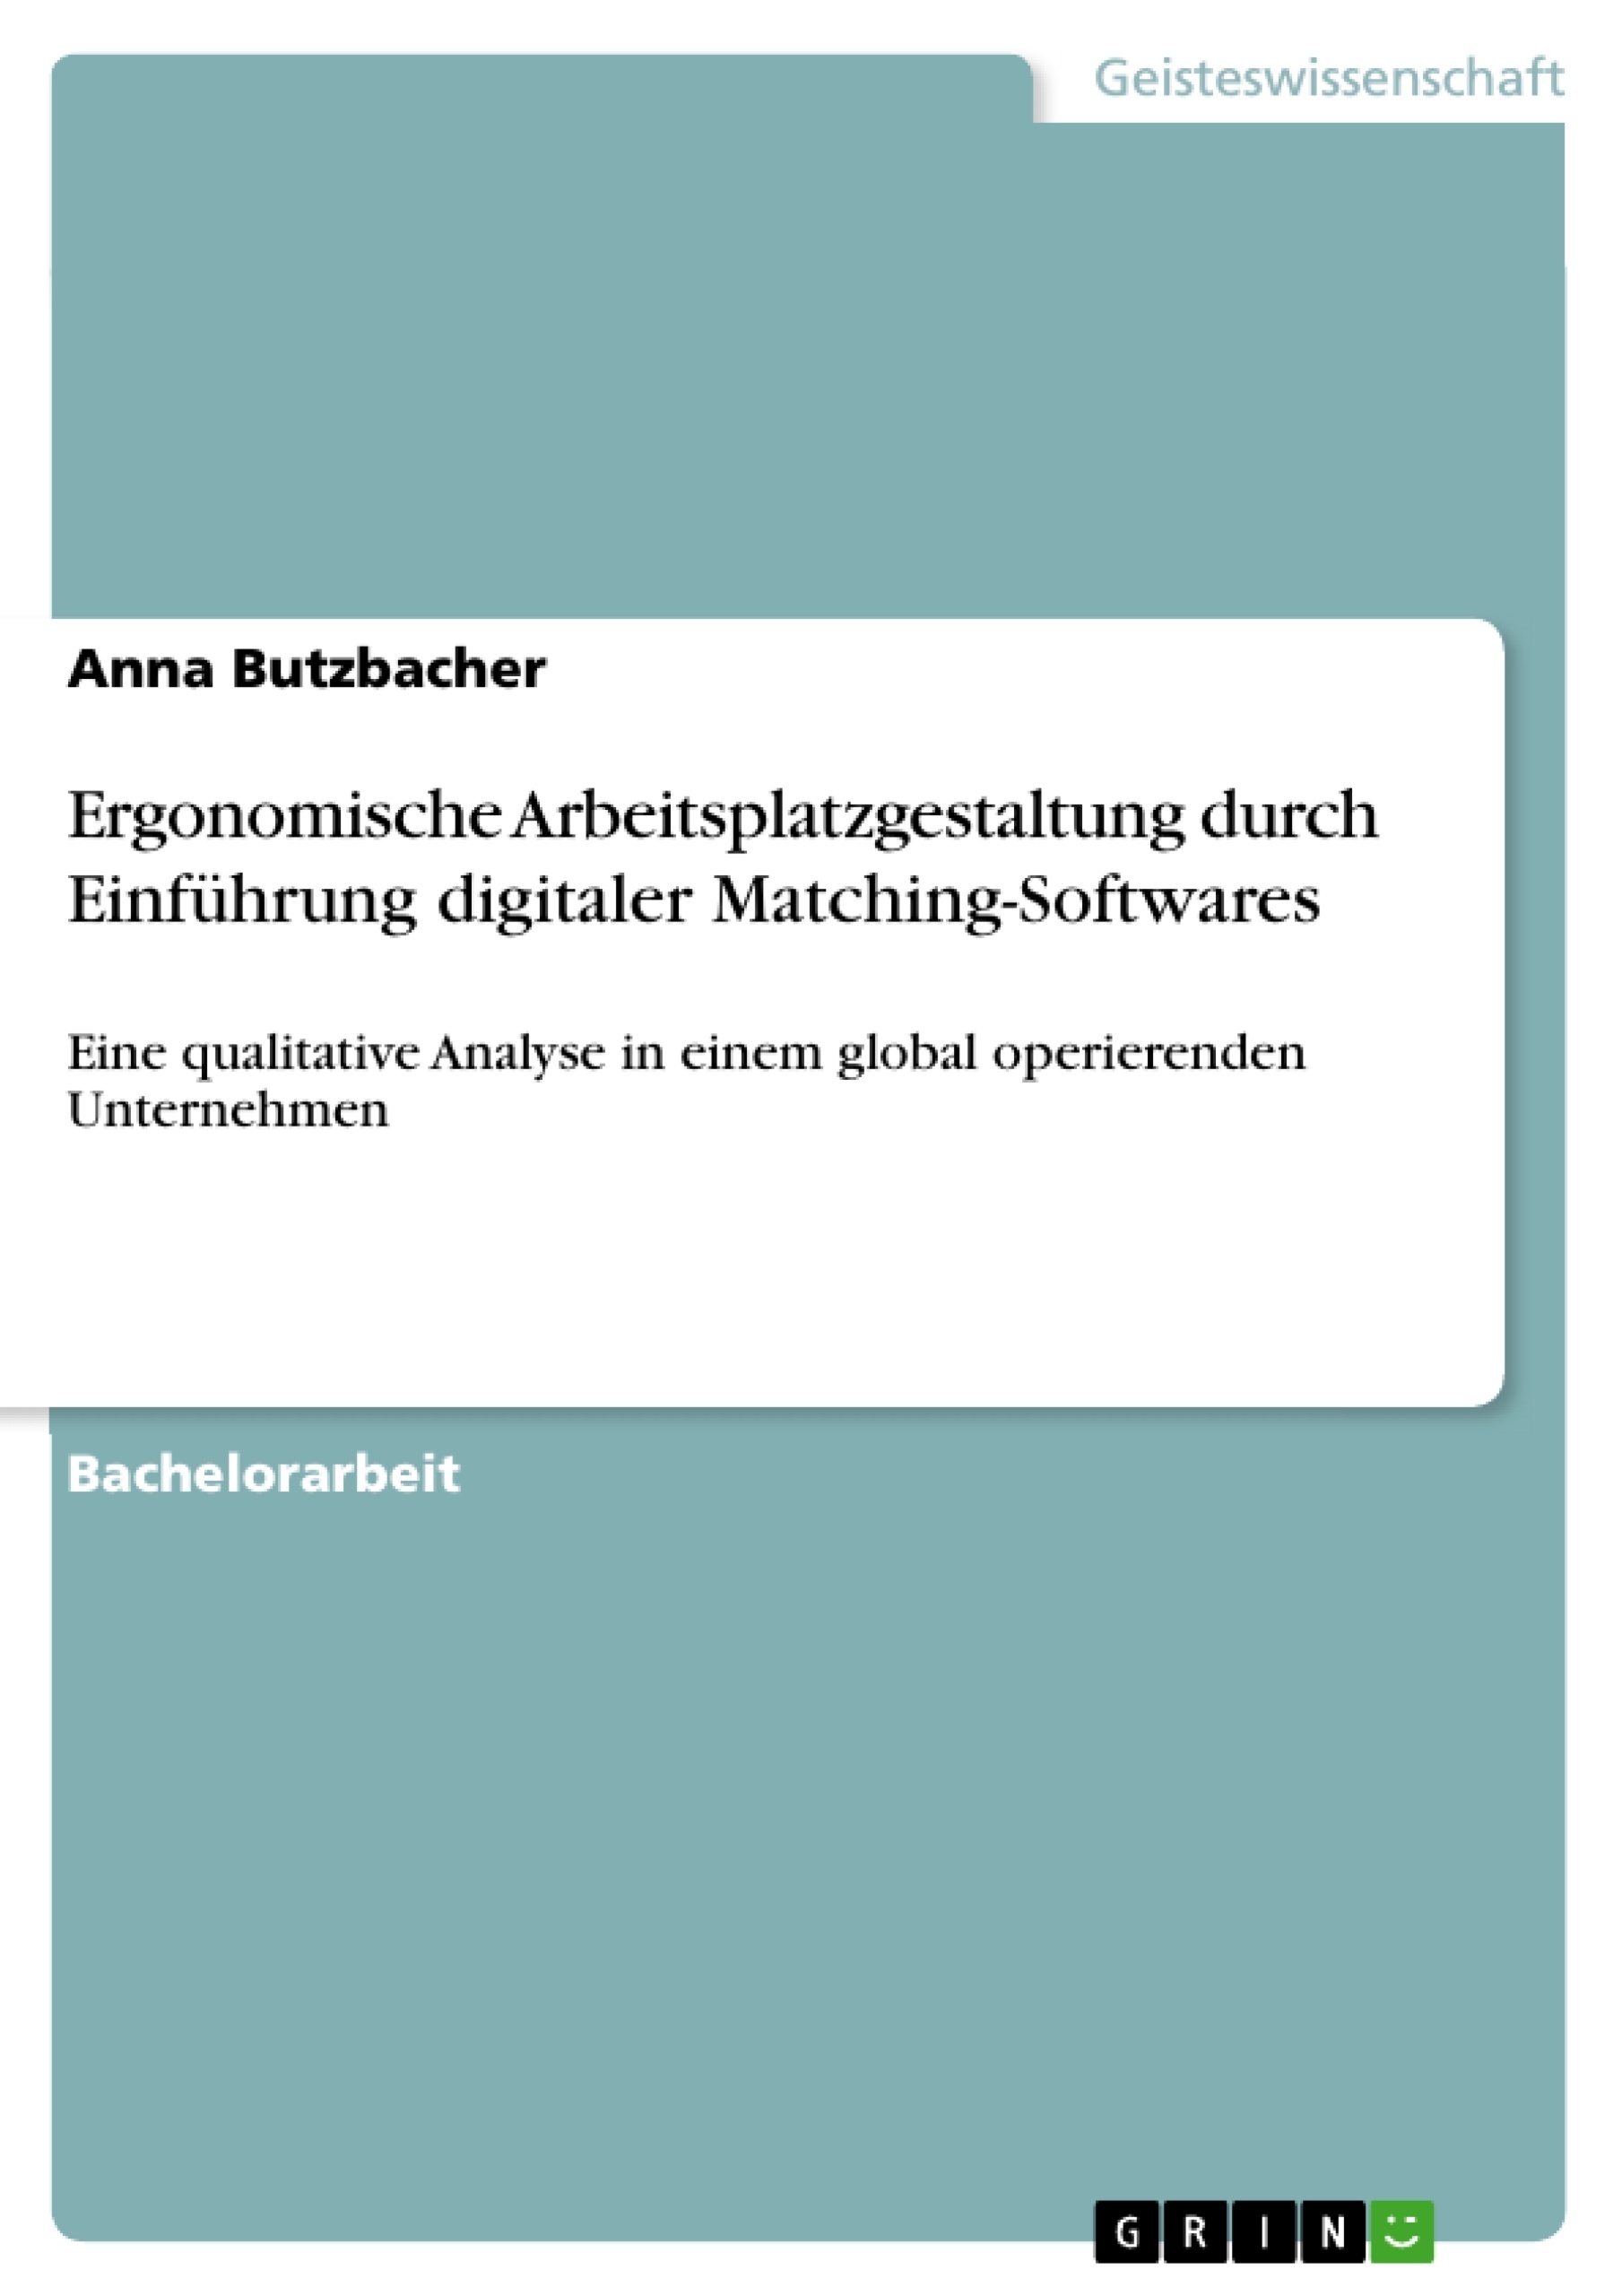 Título: Ergonomische Arbeitsplatzgestaltung durch Einführung digitaler Matching-Softwares